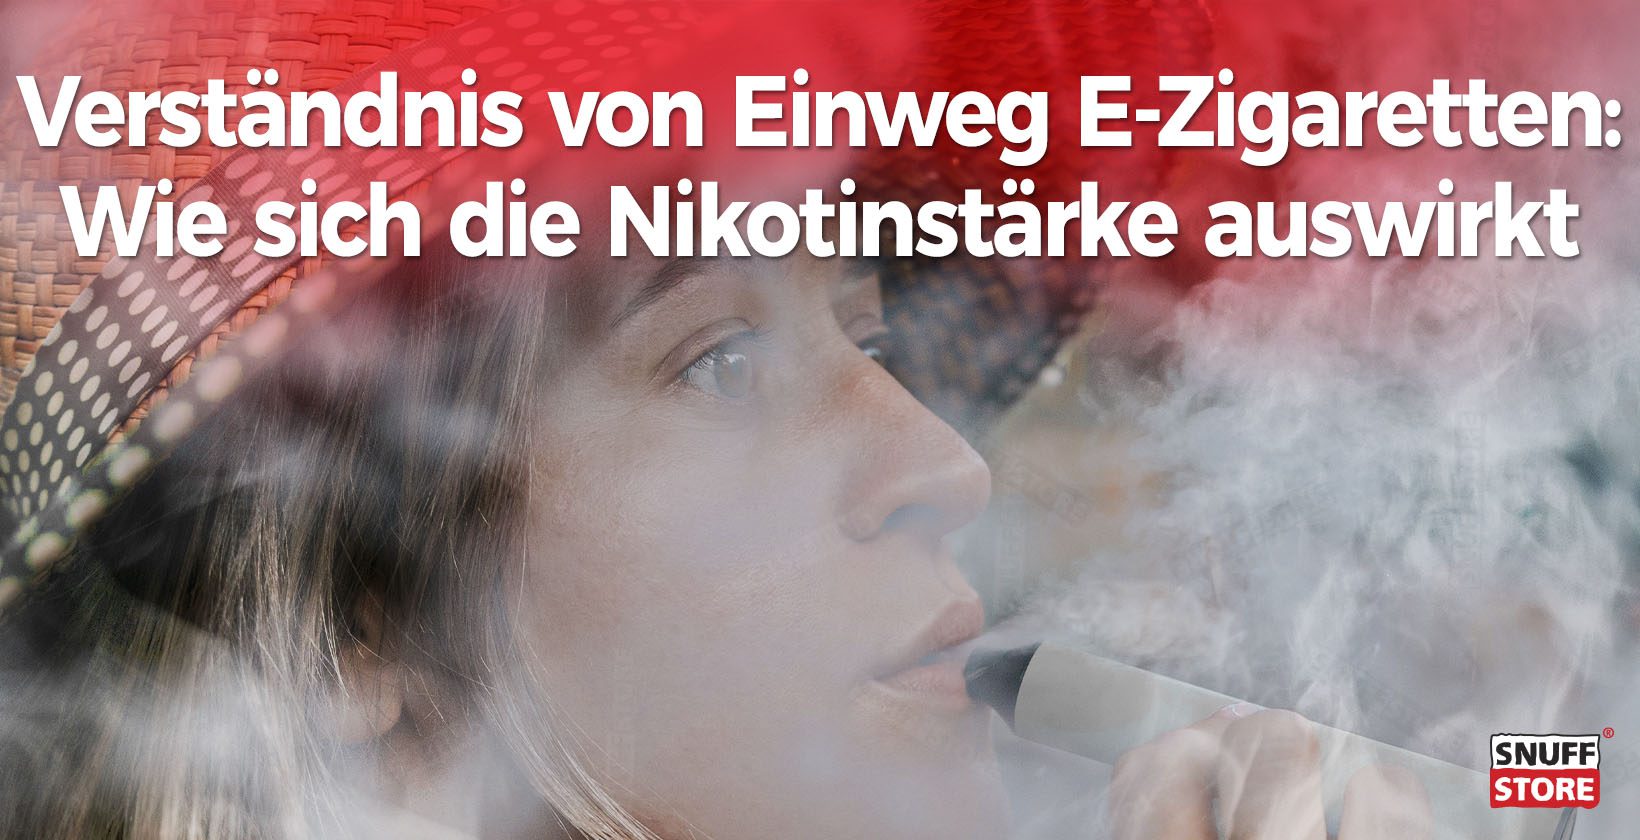 Einweg E-Zigaretten und Nikotinstärke